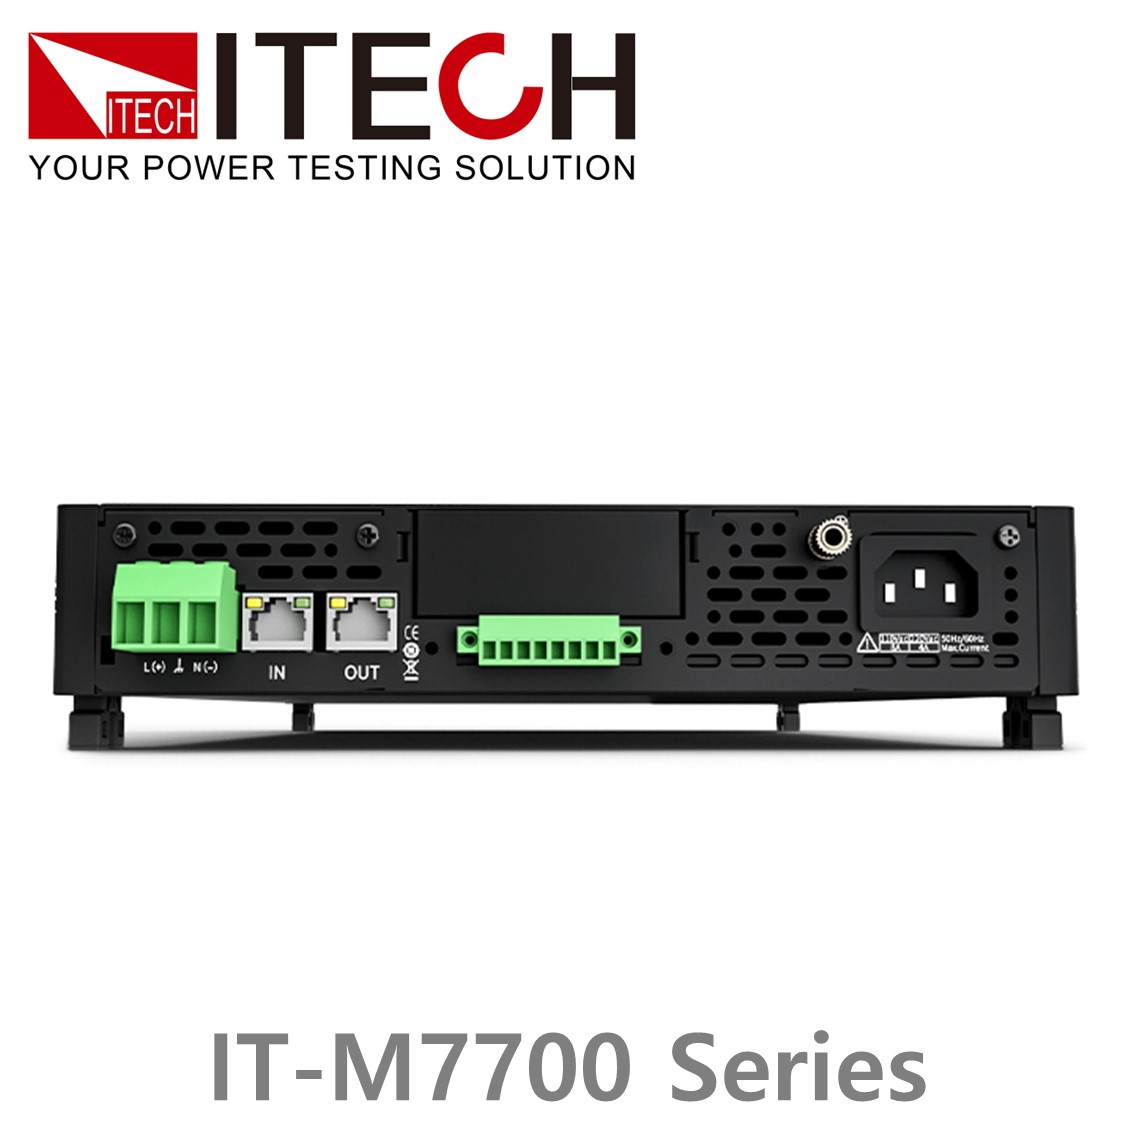 [ ITECH ] IT-M7700시리즈 고성능 스위칭타입 AC전원공급기 (1U 하프 랙, 300~1500VA, 45~1kHz)